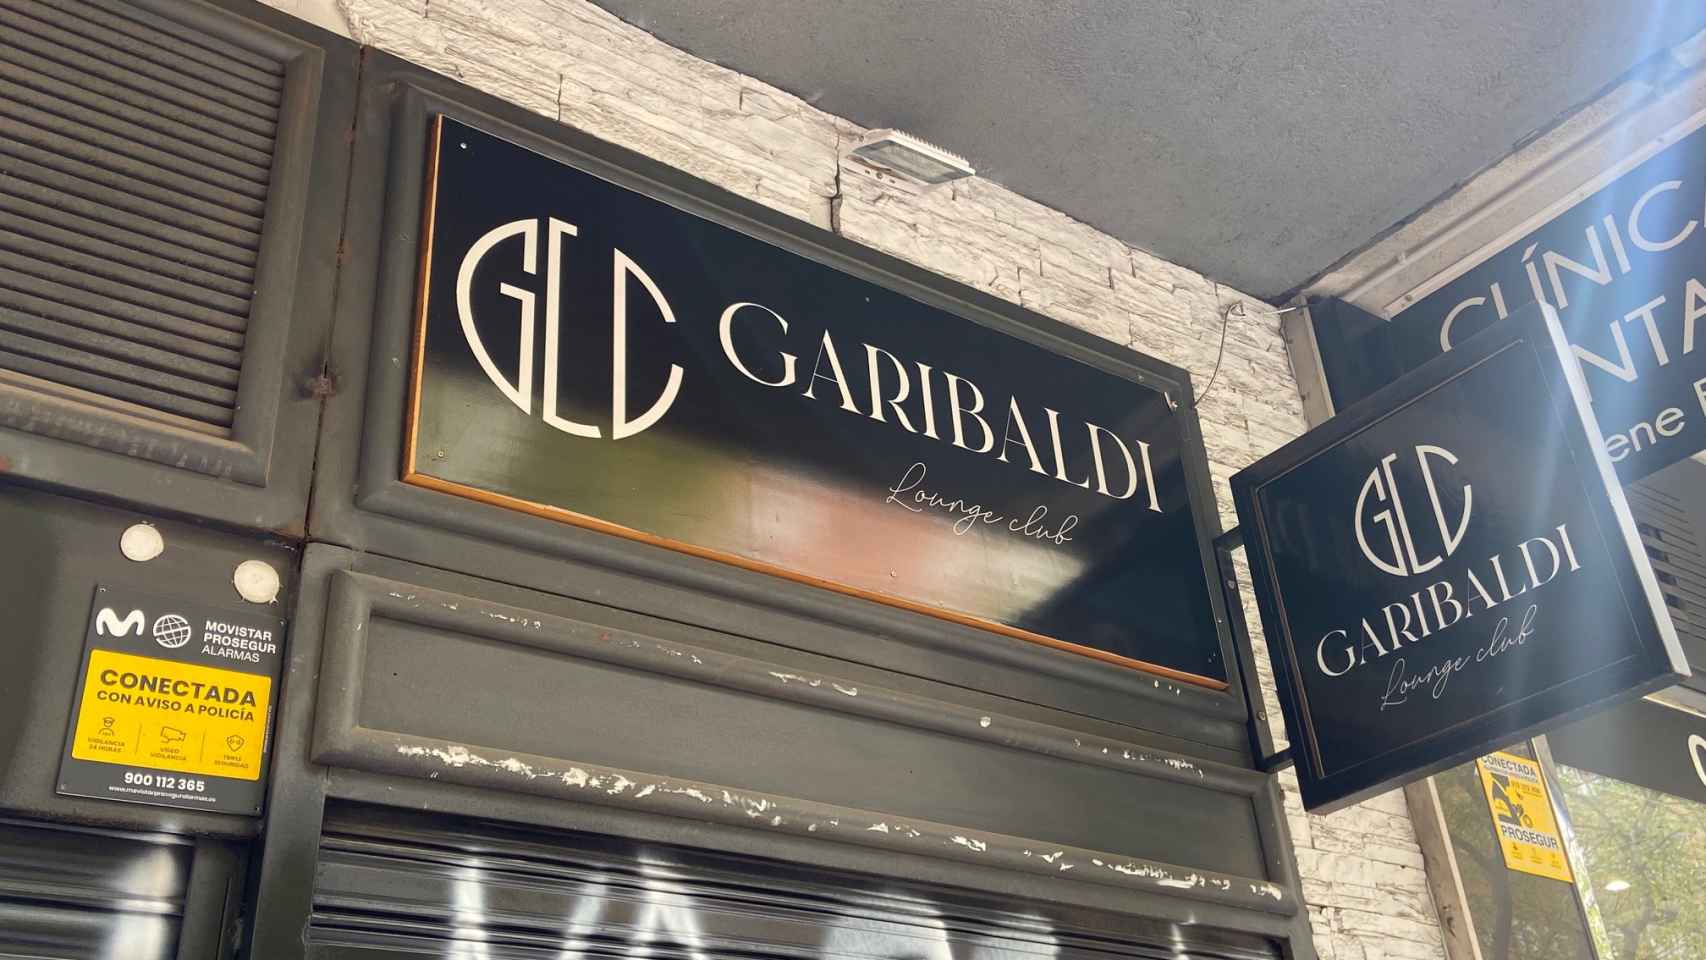 El Garibaldi lounge Club de Clara del Rey.